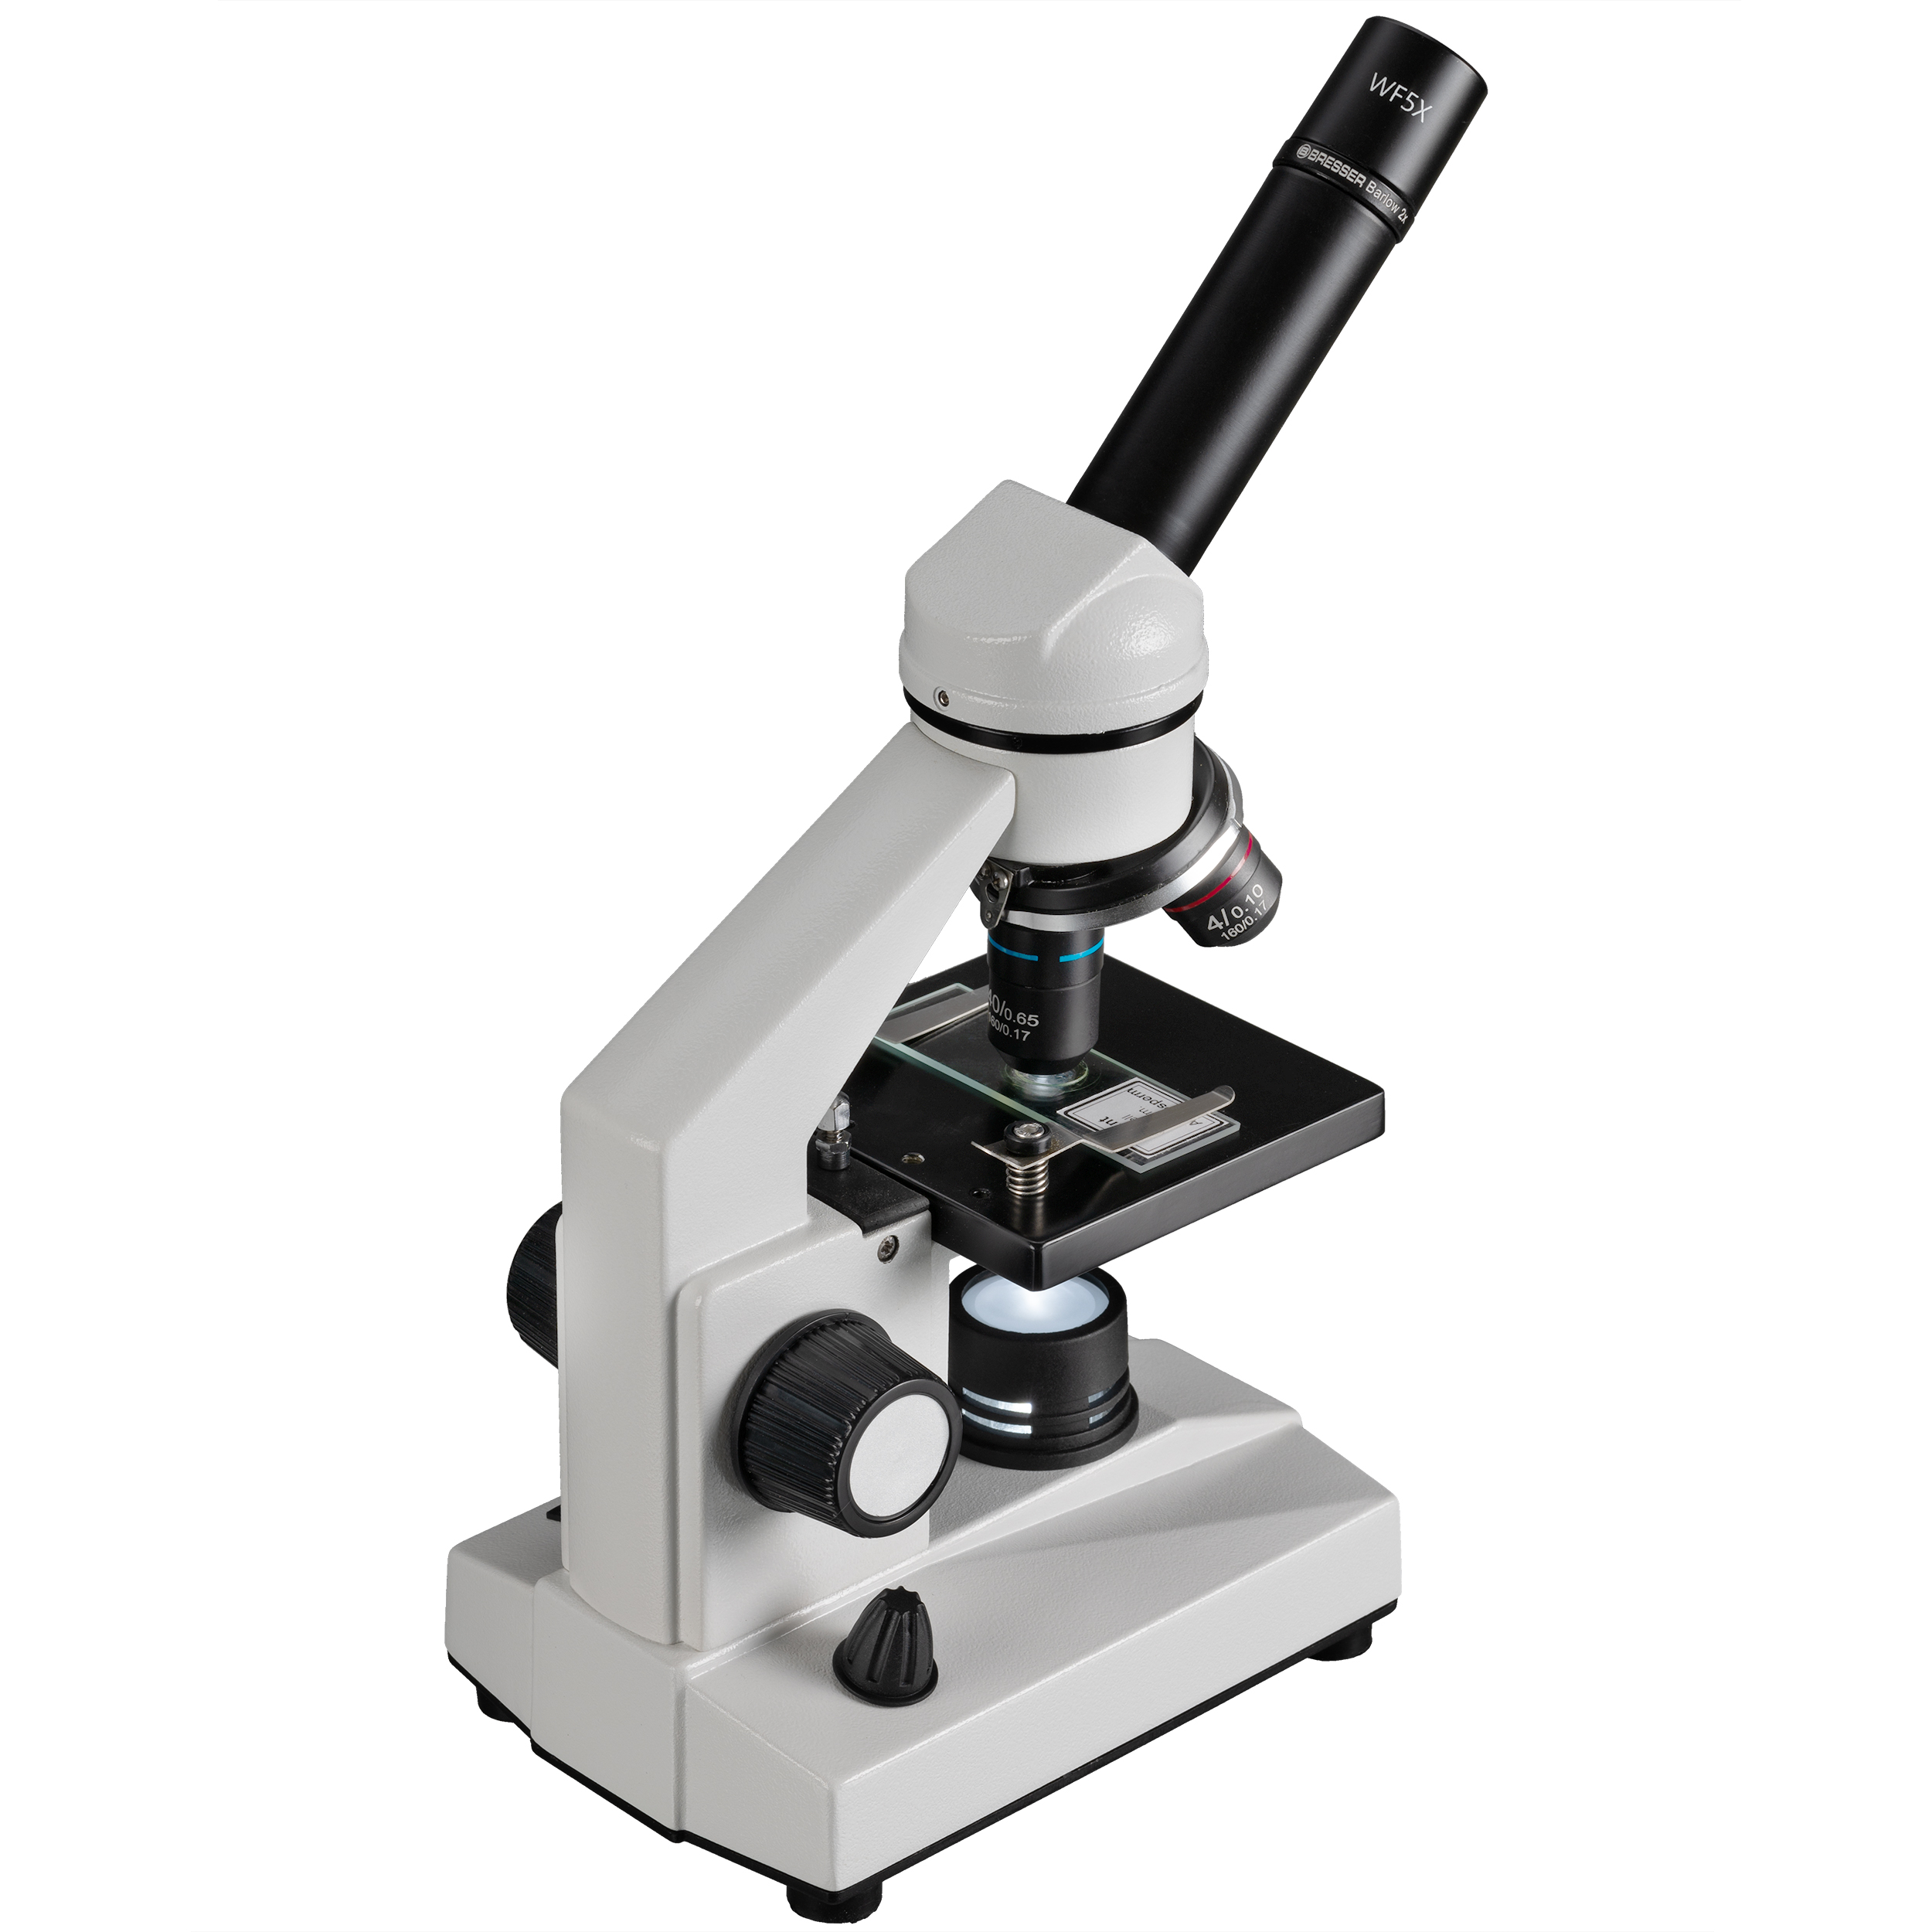 BRESSER Biolux DLX Mikroskop - Refurbished